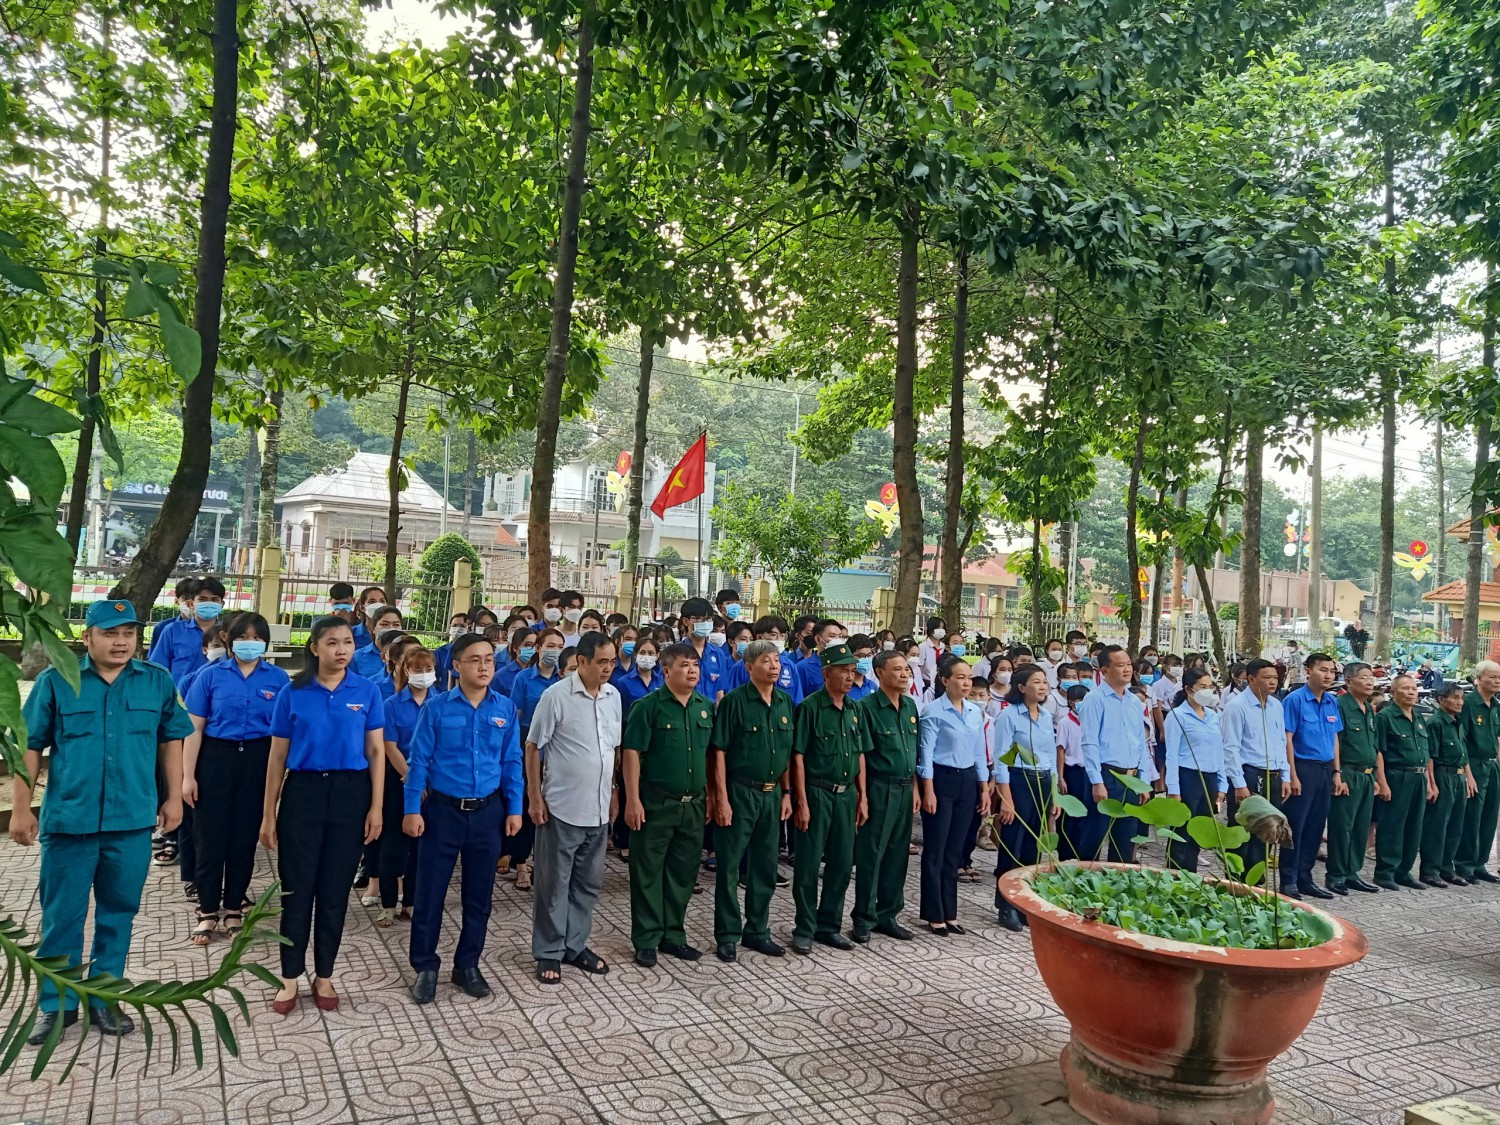 Trường THCS Phú Mỹ tham dự họp mặt ôn lại truyền thống kỷ niệm 75 năm Ngày TBLS (27/7/1947-27/7/2022), tuyên truyền chủ quyền biển đảo, biên giới Việt Nam năm 2022